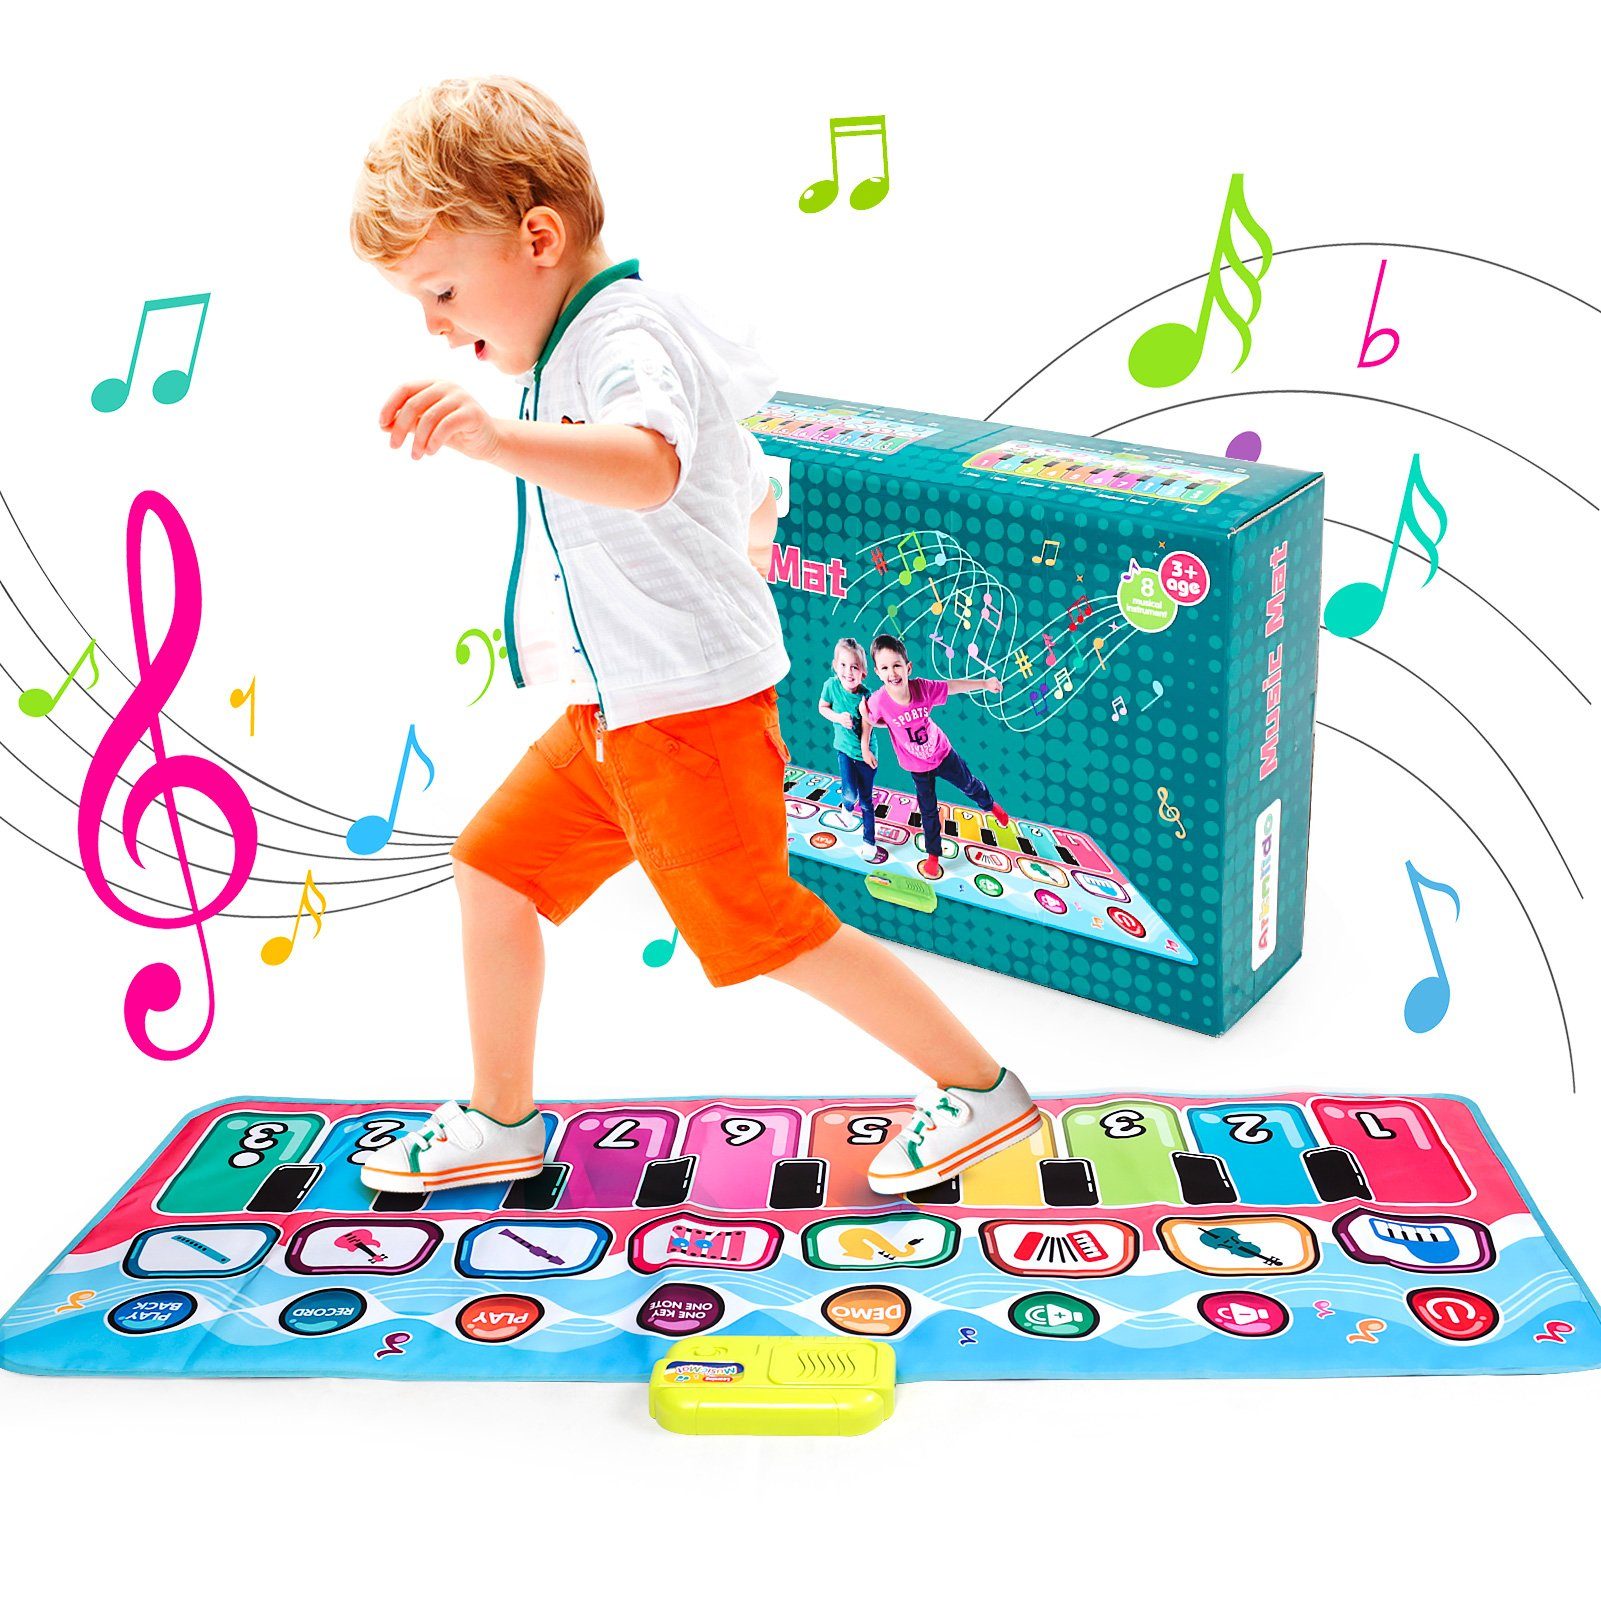 Tanzmatte Tanzschritt Kinder Spielmatte Musikmatte Rutschfest mit Musik Bunt 